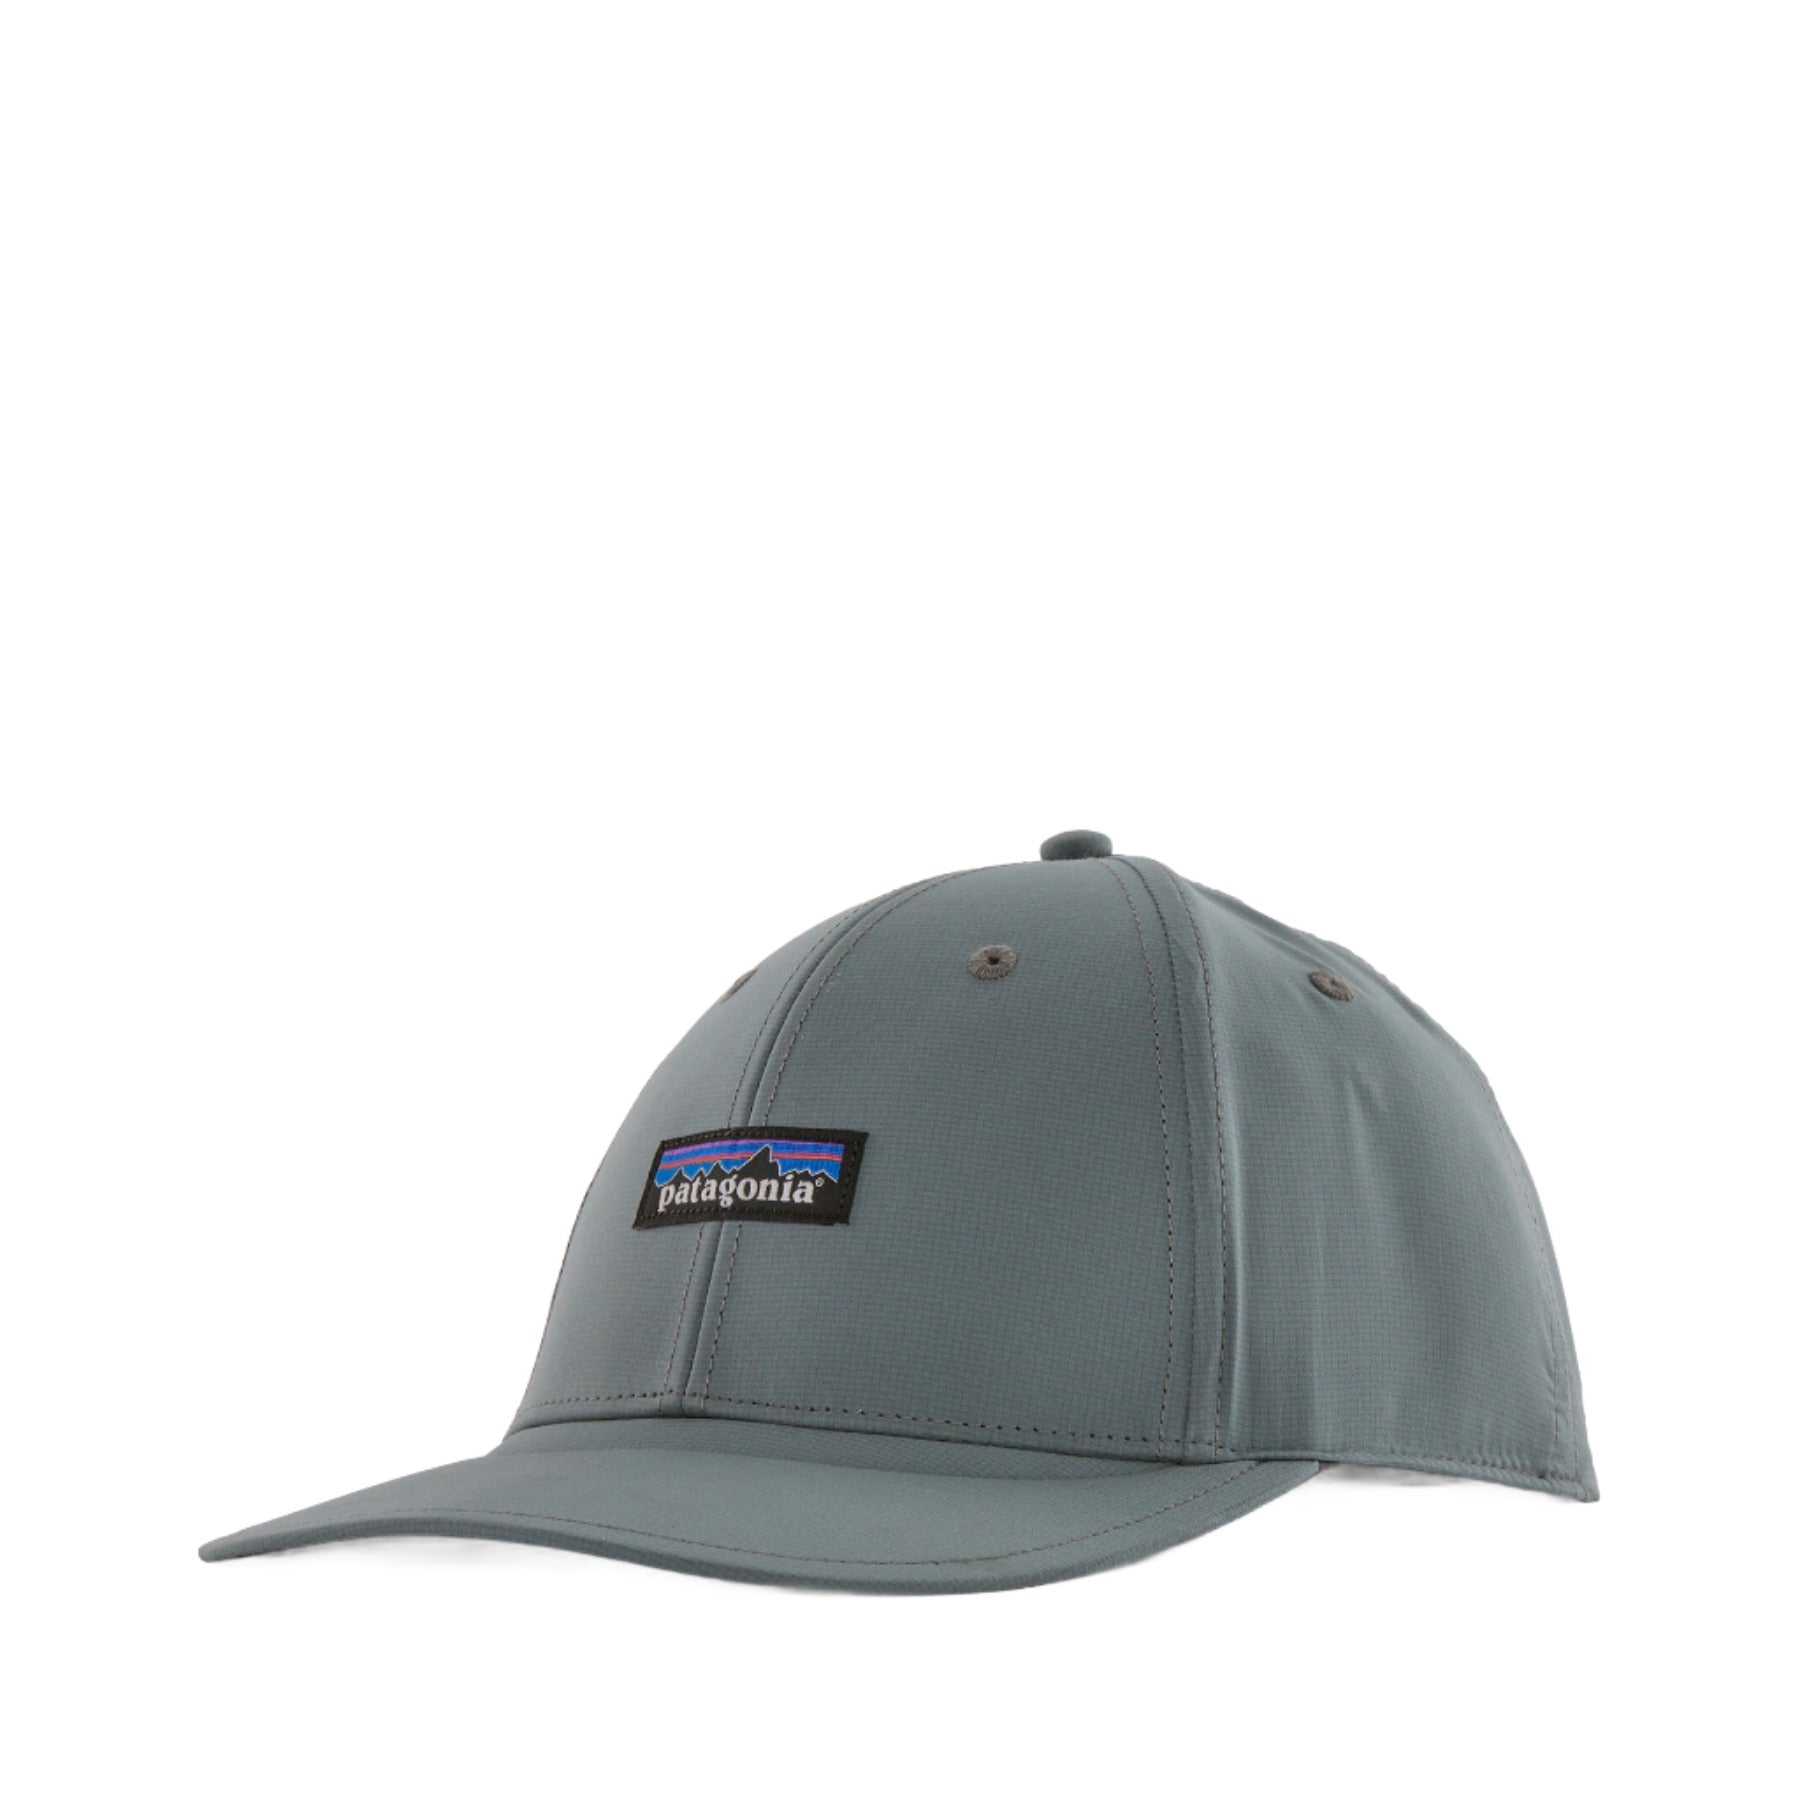 Airshed cap